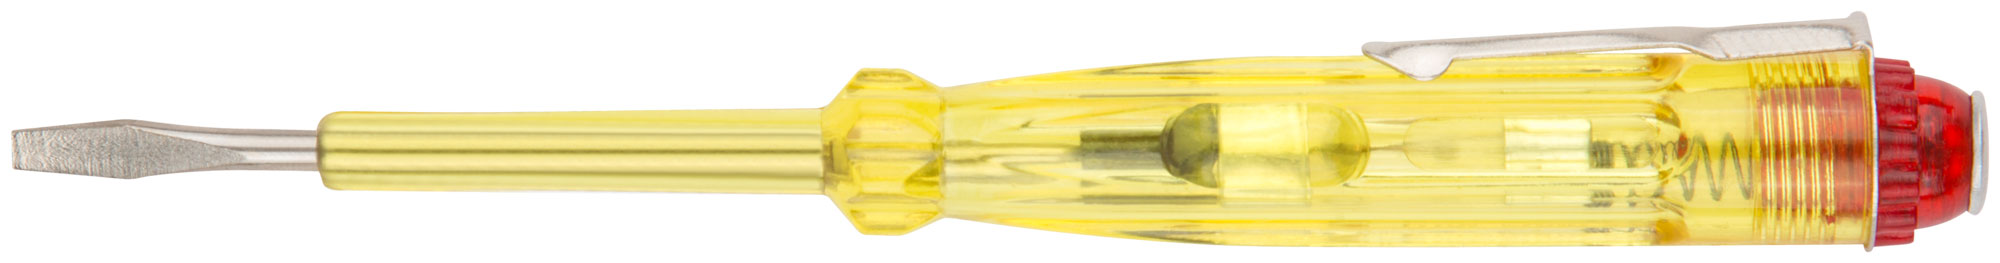 Отвертка индикаторная, желтая ручка 100 - 500 В, 140 мм КУРС 56501 отвертка индикаторная 190 мм курс 56504